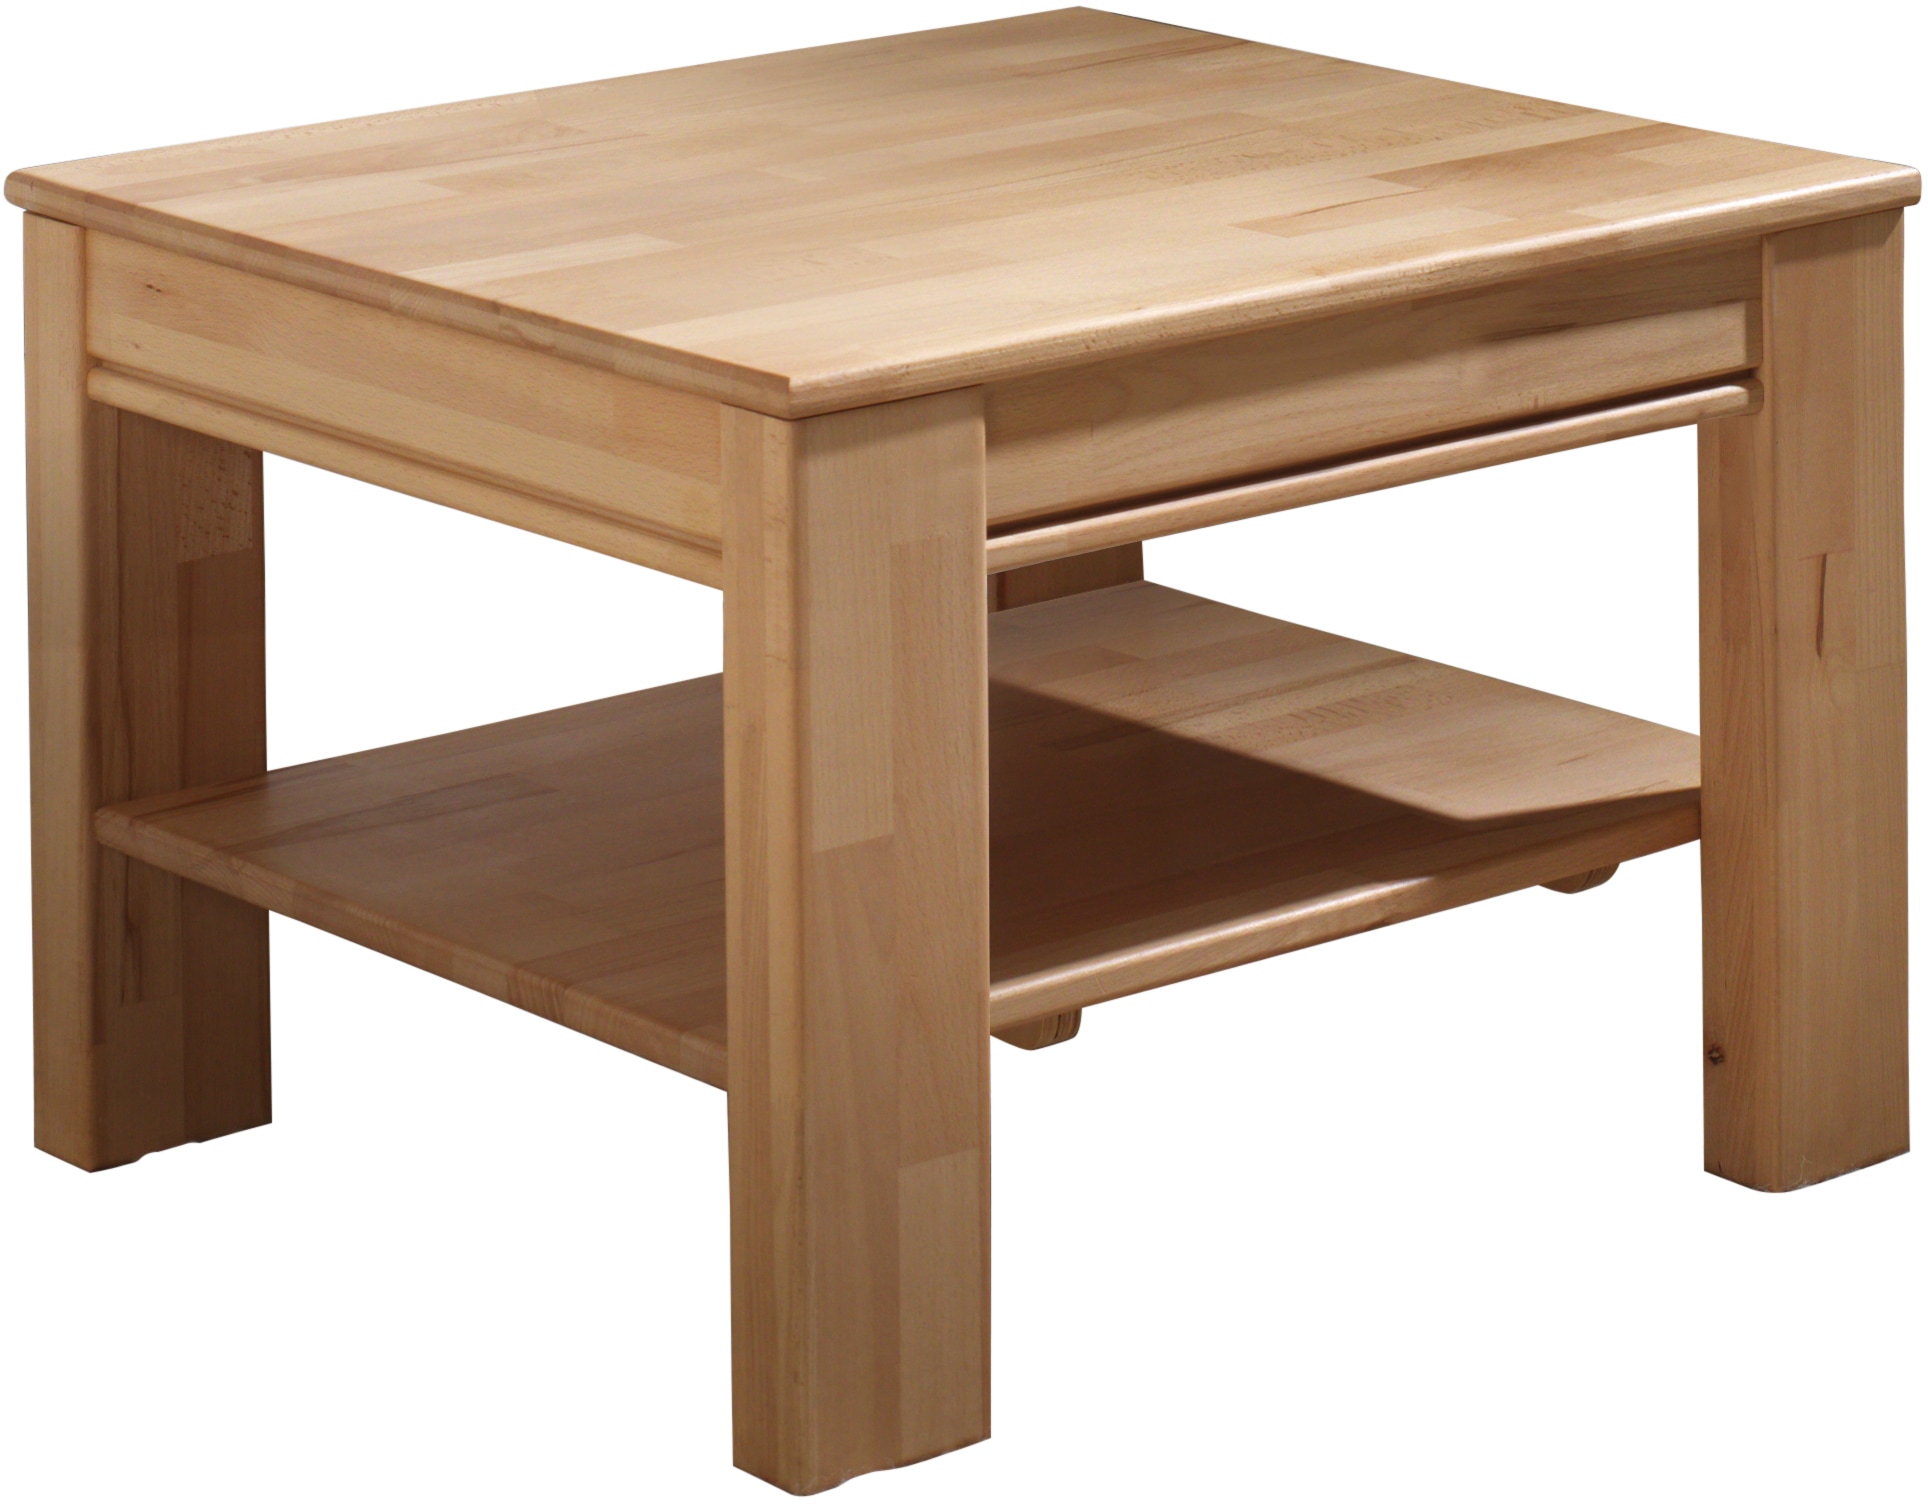 MCA furniture Couchtisch, Couchtisch Massivholztisch mit Ablage sans frais  de livraison sur